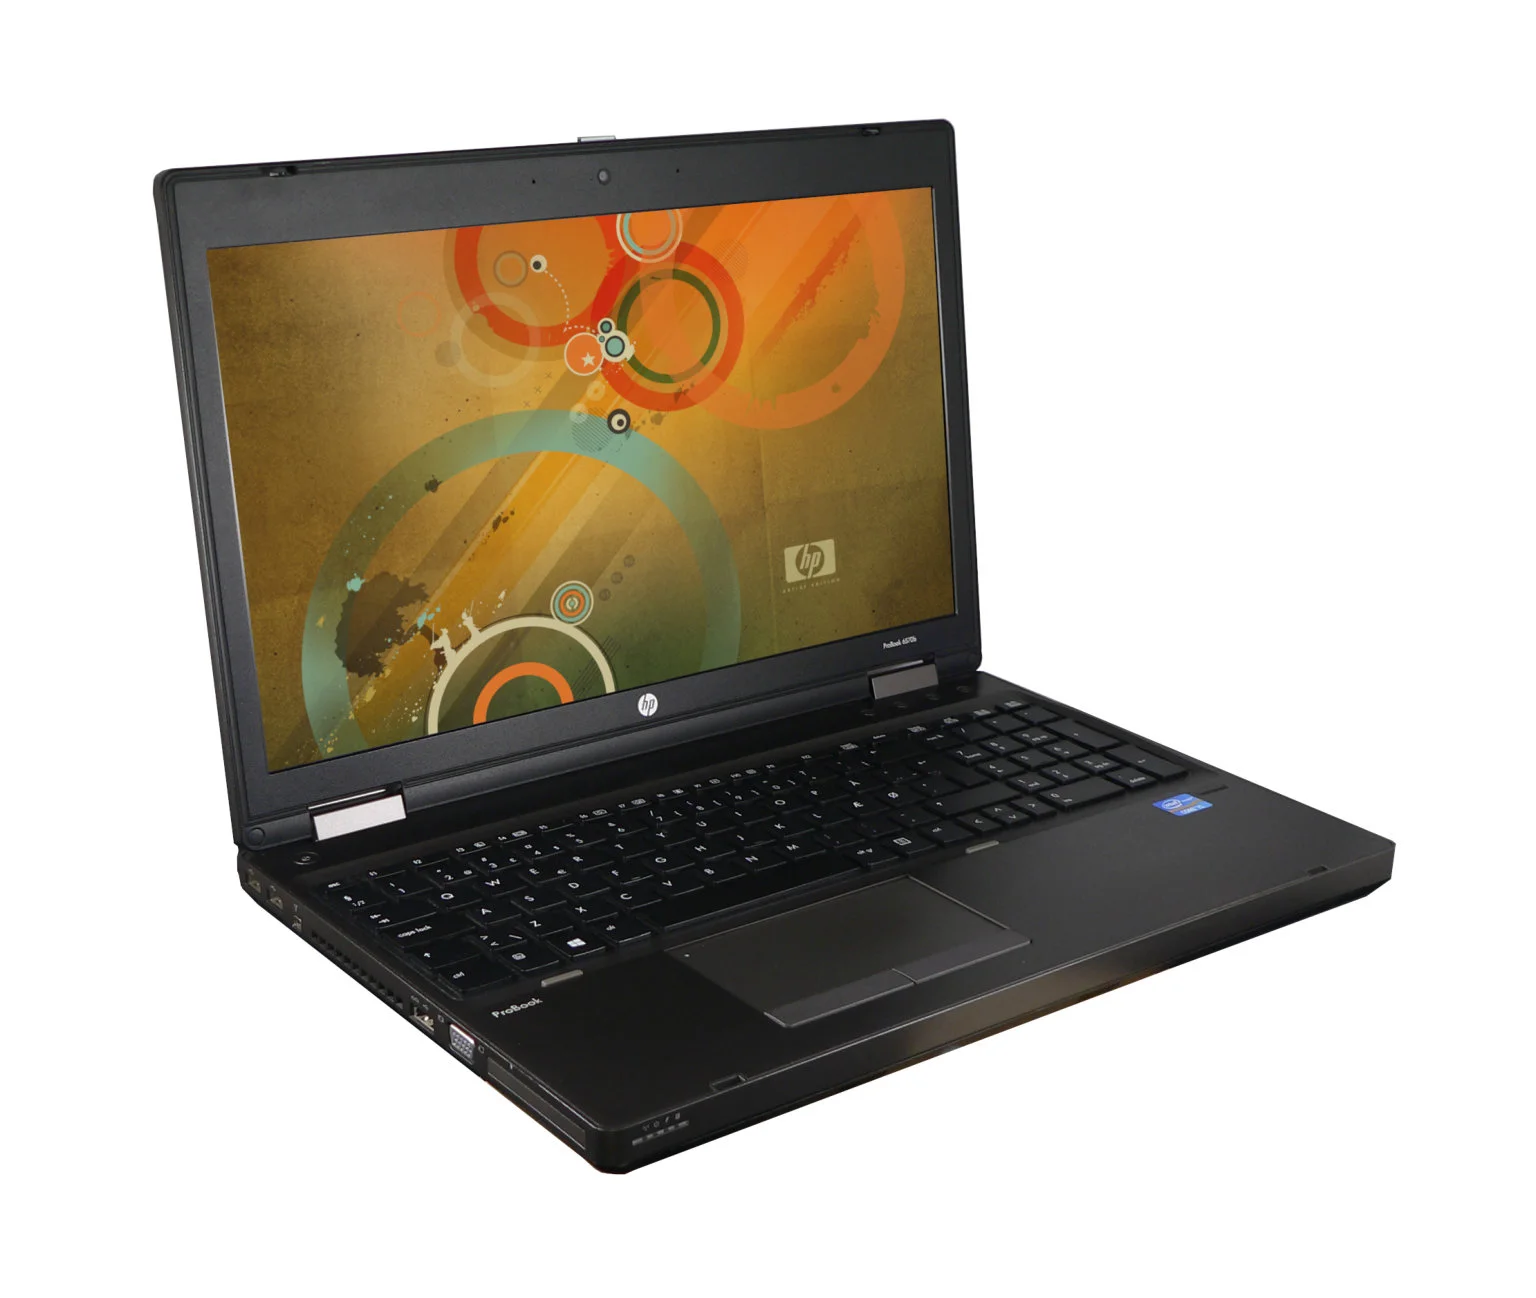 HP Probook 6570b használt laptop - Intel Core i3-3110M 2,40 GHz, 8 GB ram, 500 gb SSHD, 15,6